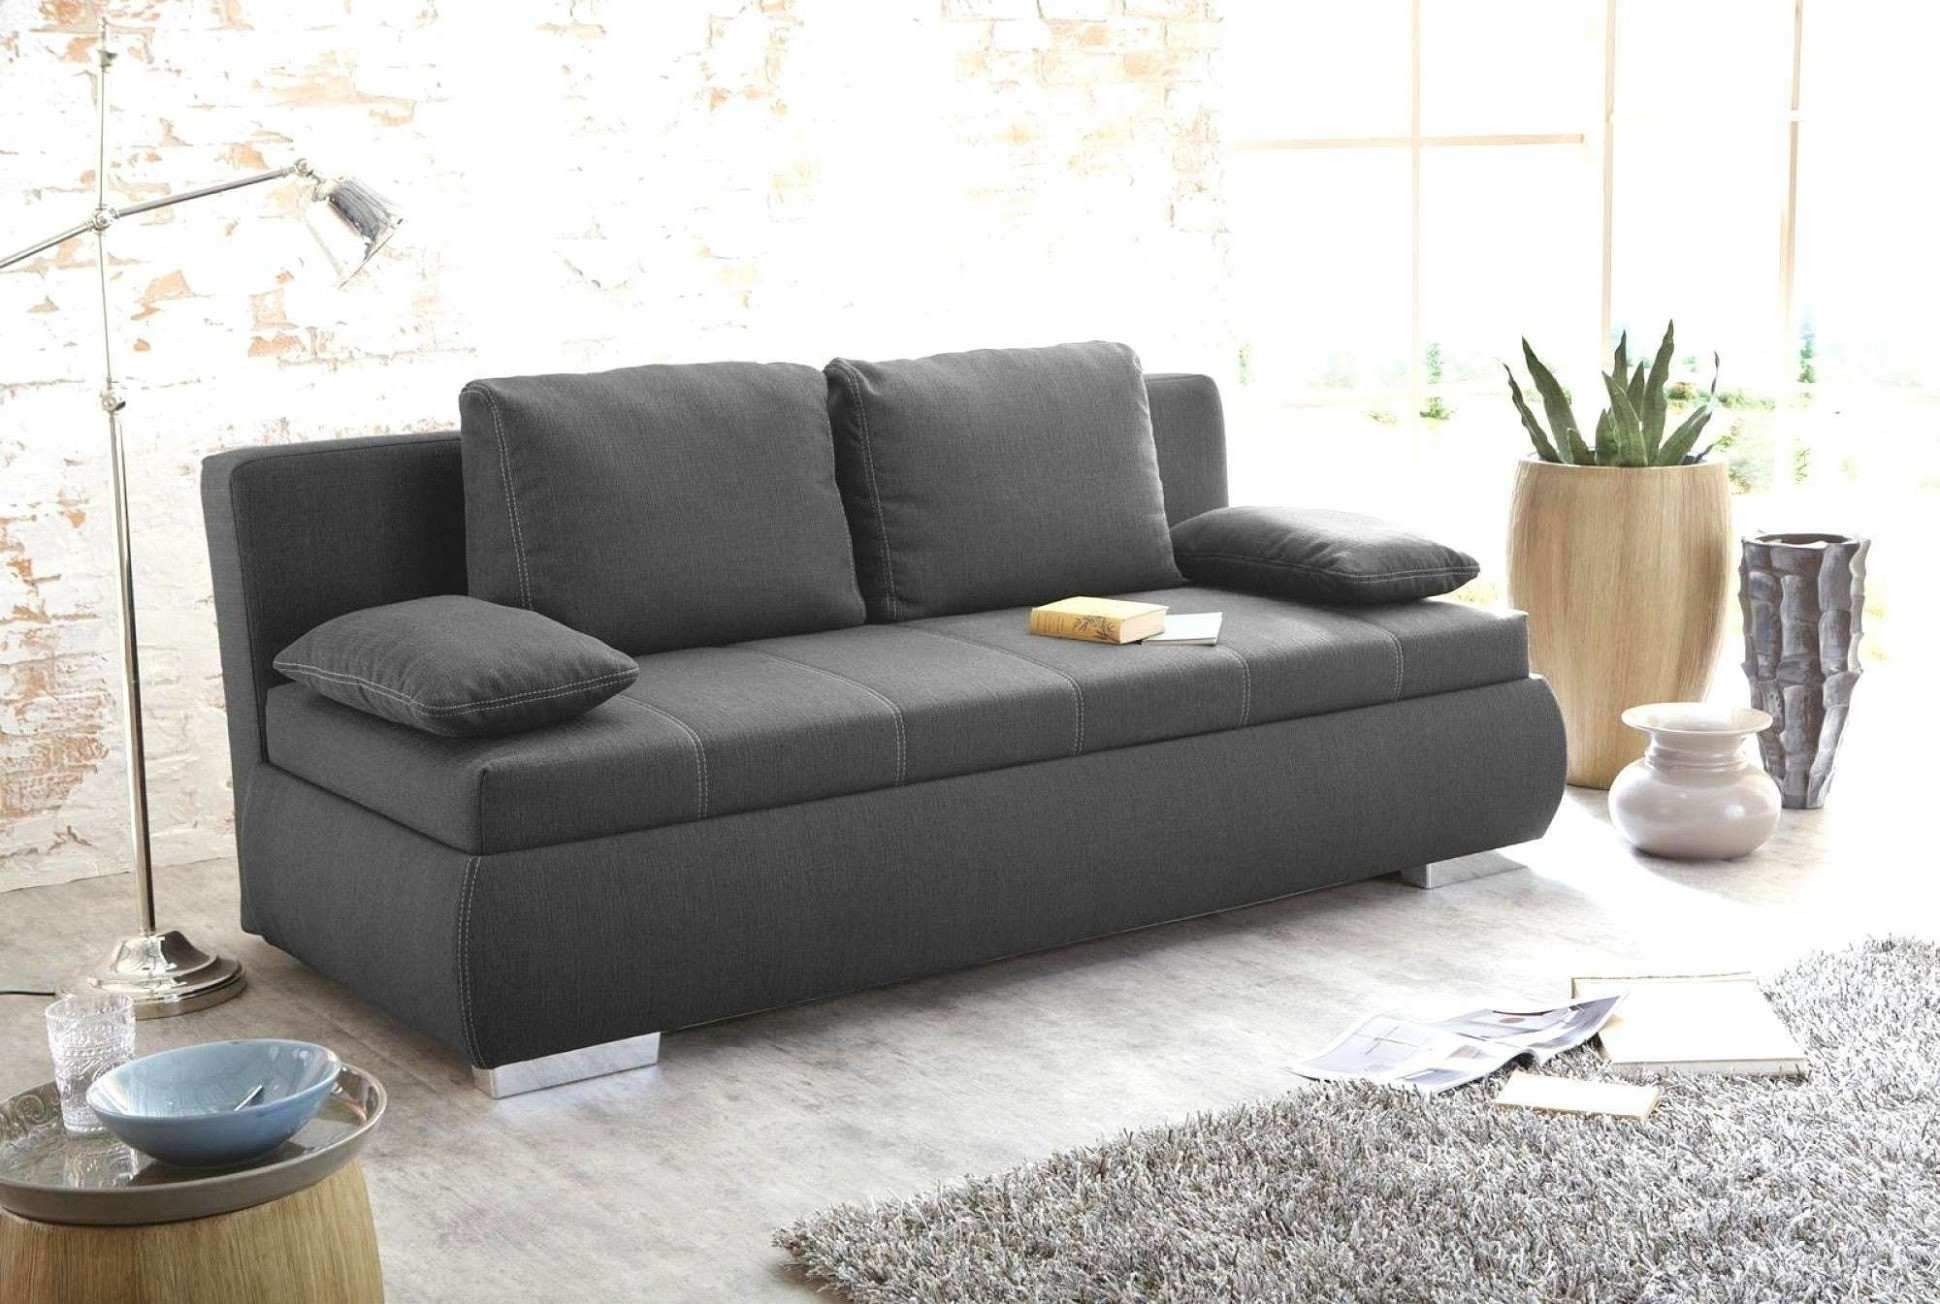 grau grun wohnzimmer genial 50 einzigartig von sofa kaufen gunstig konzept of grau grun wohnzimmer